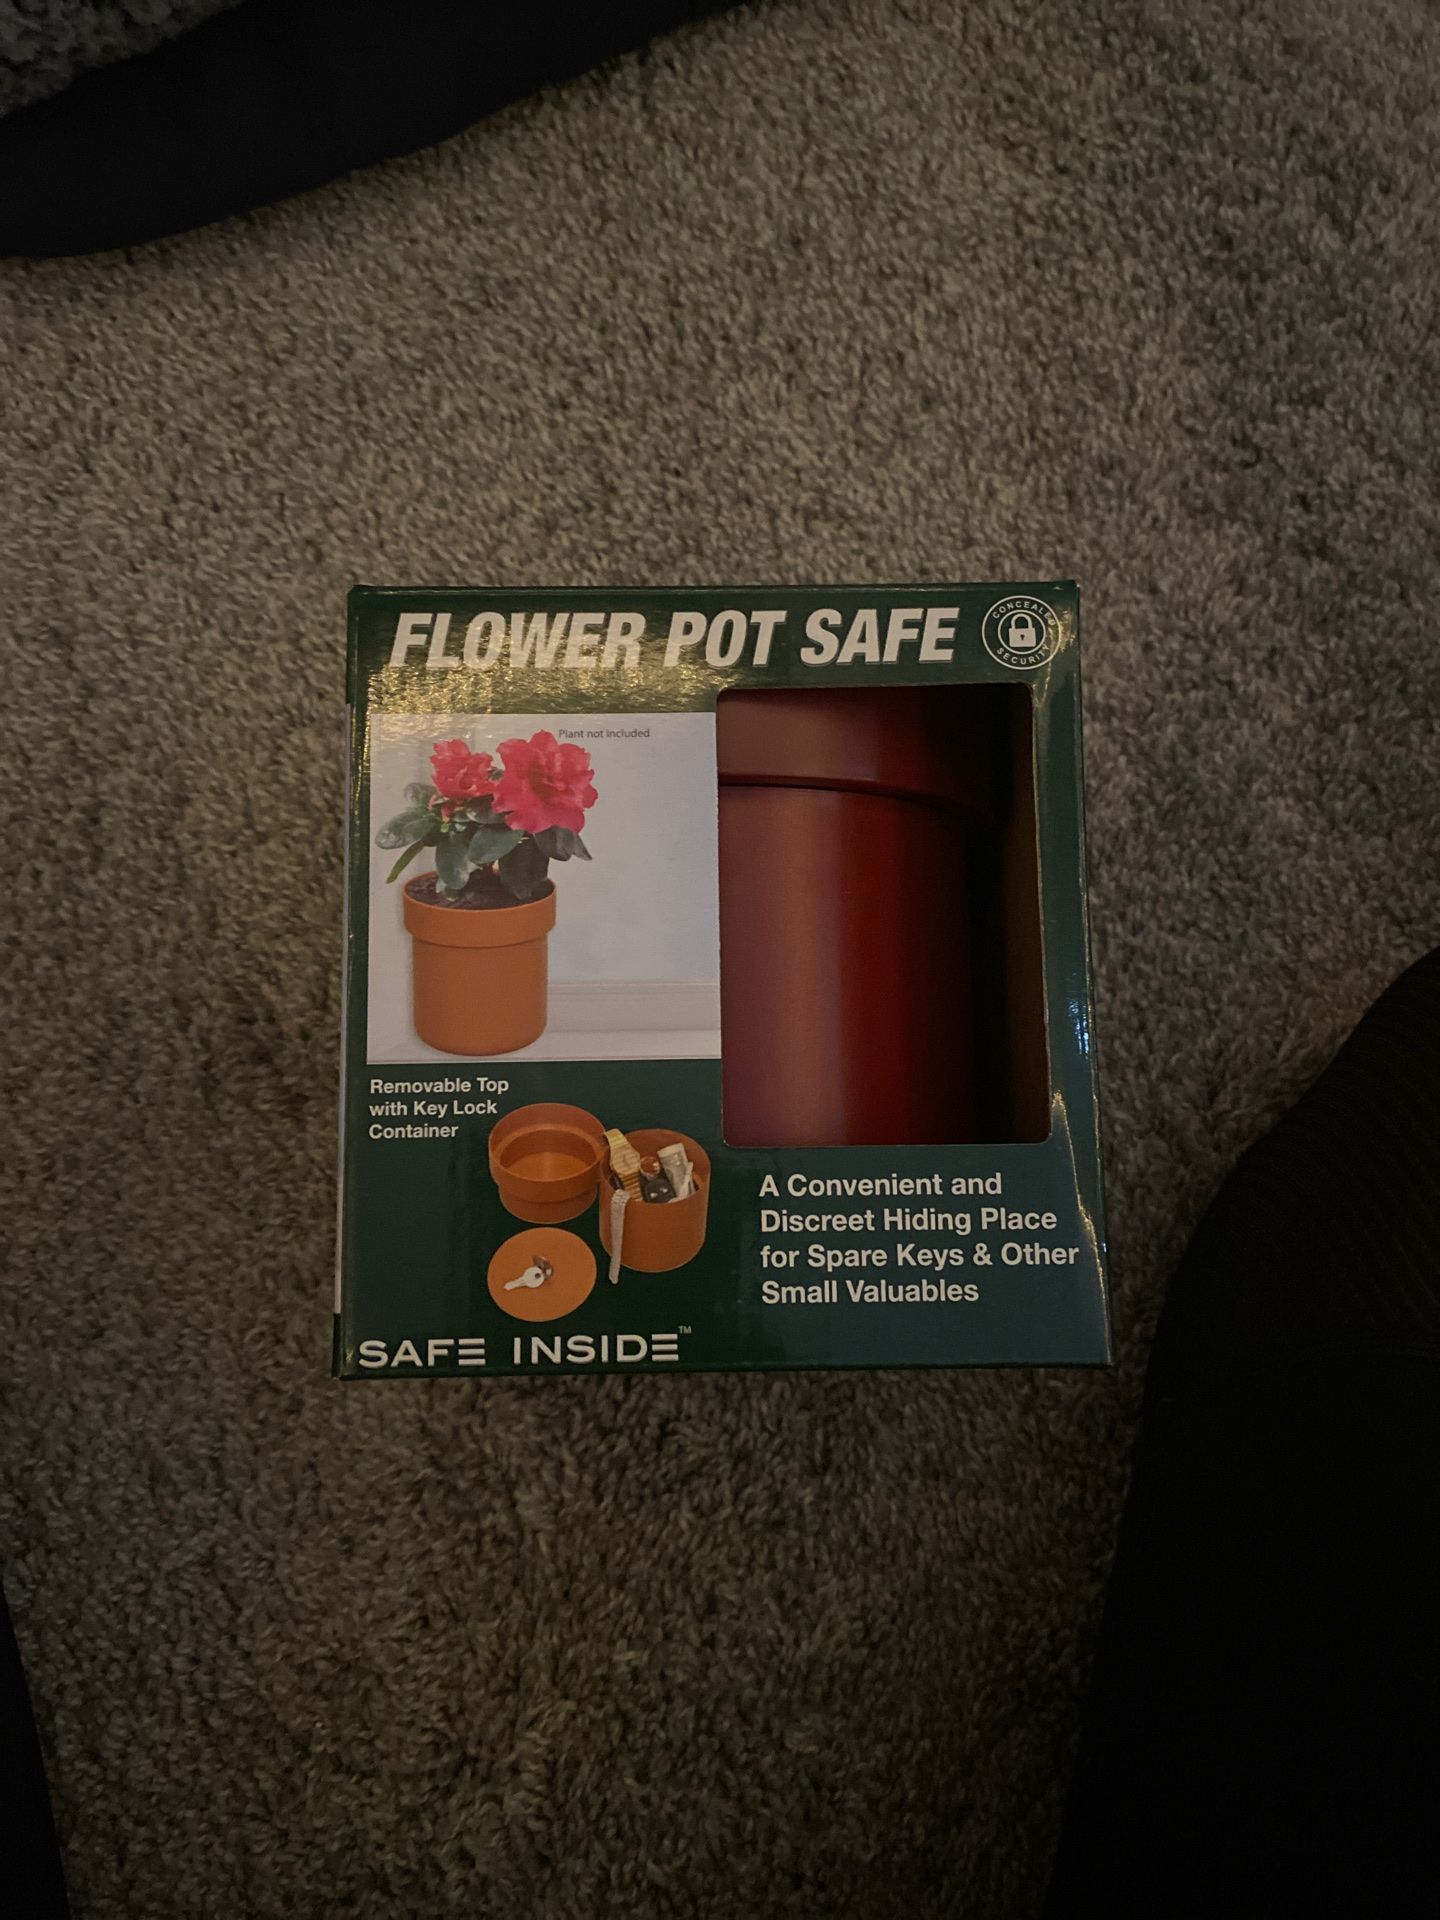 Flower pot safe